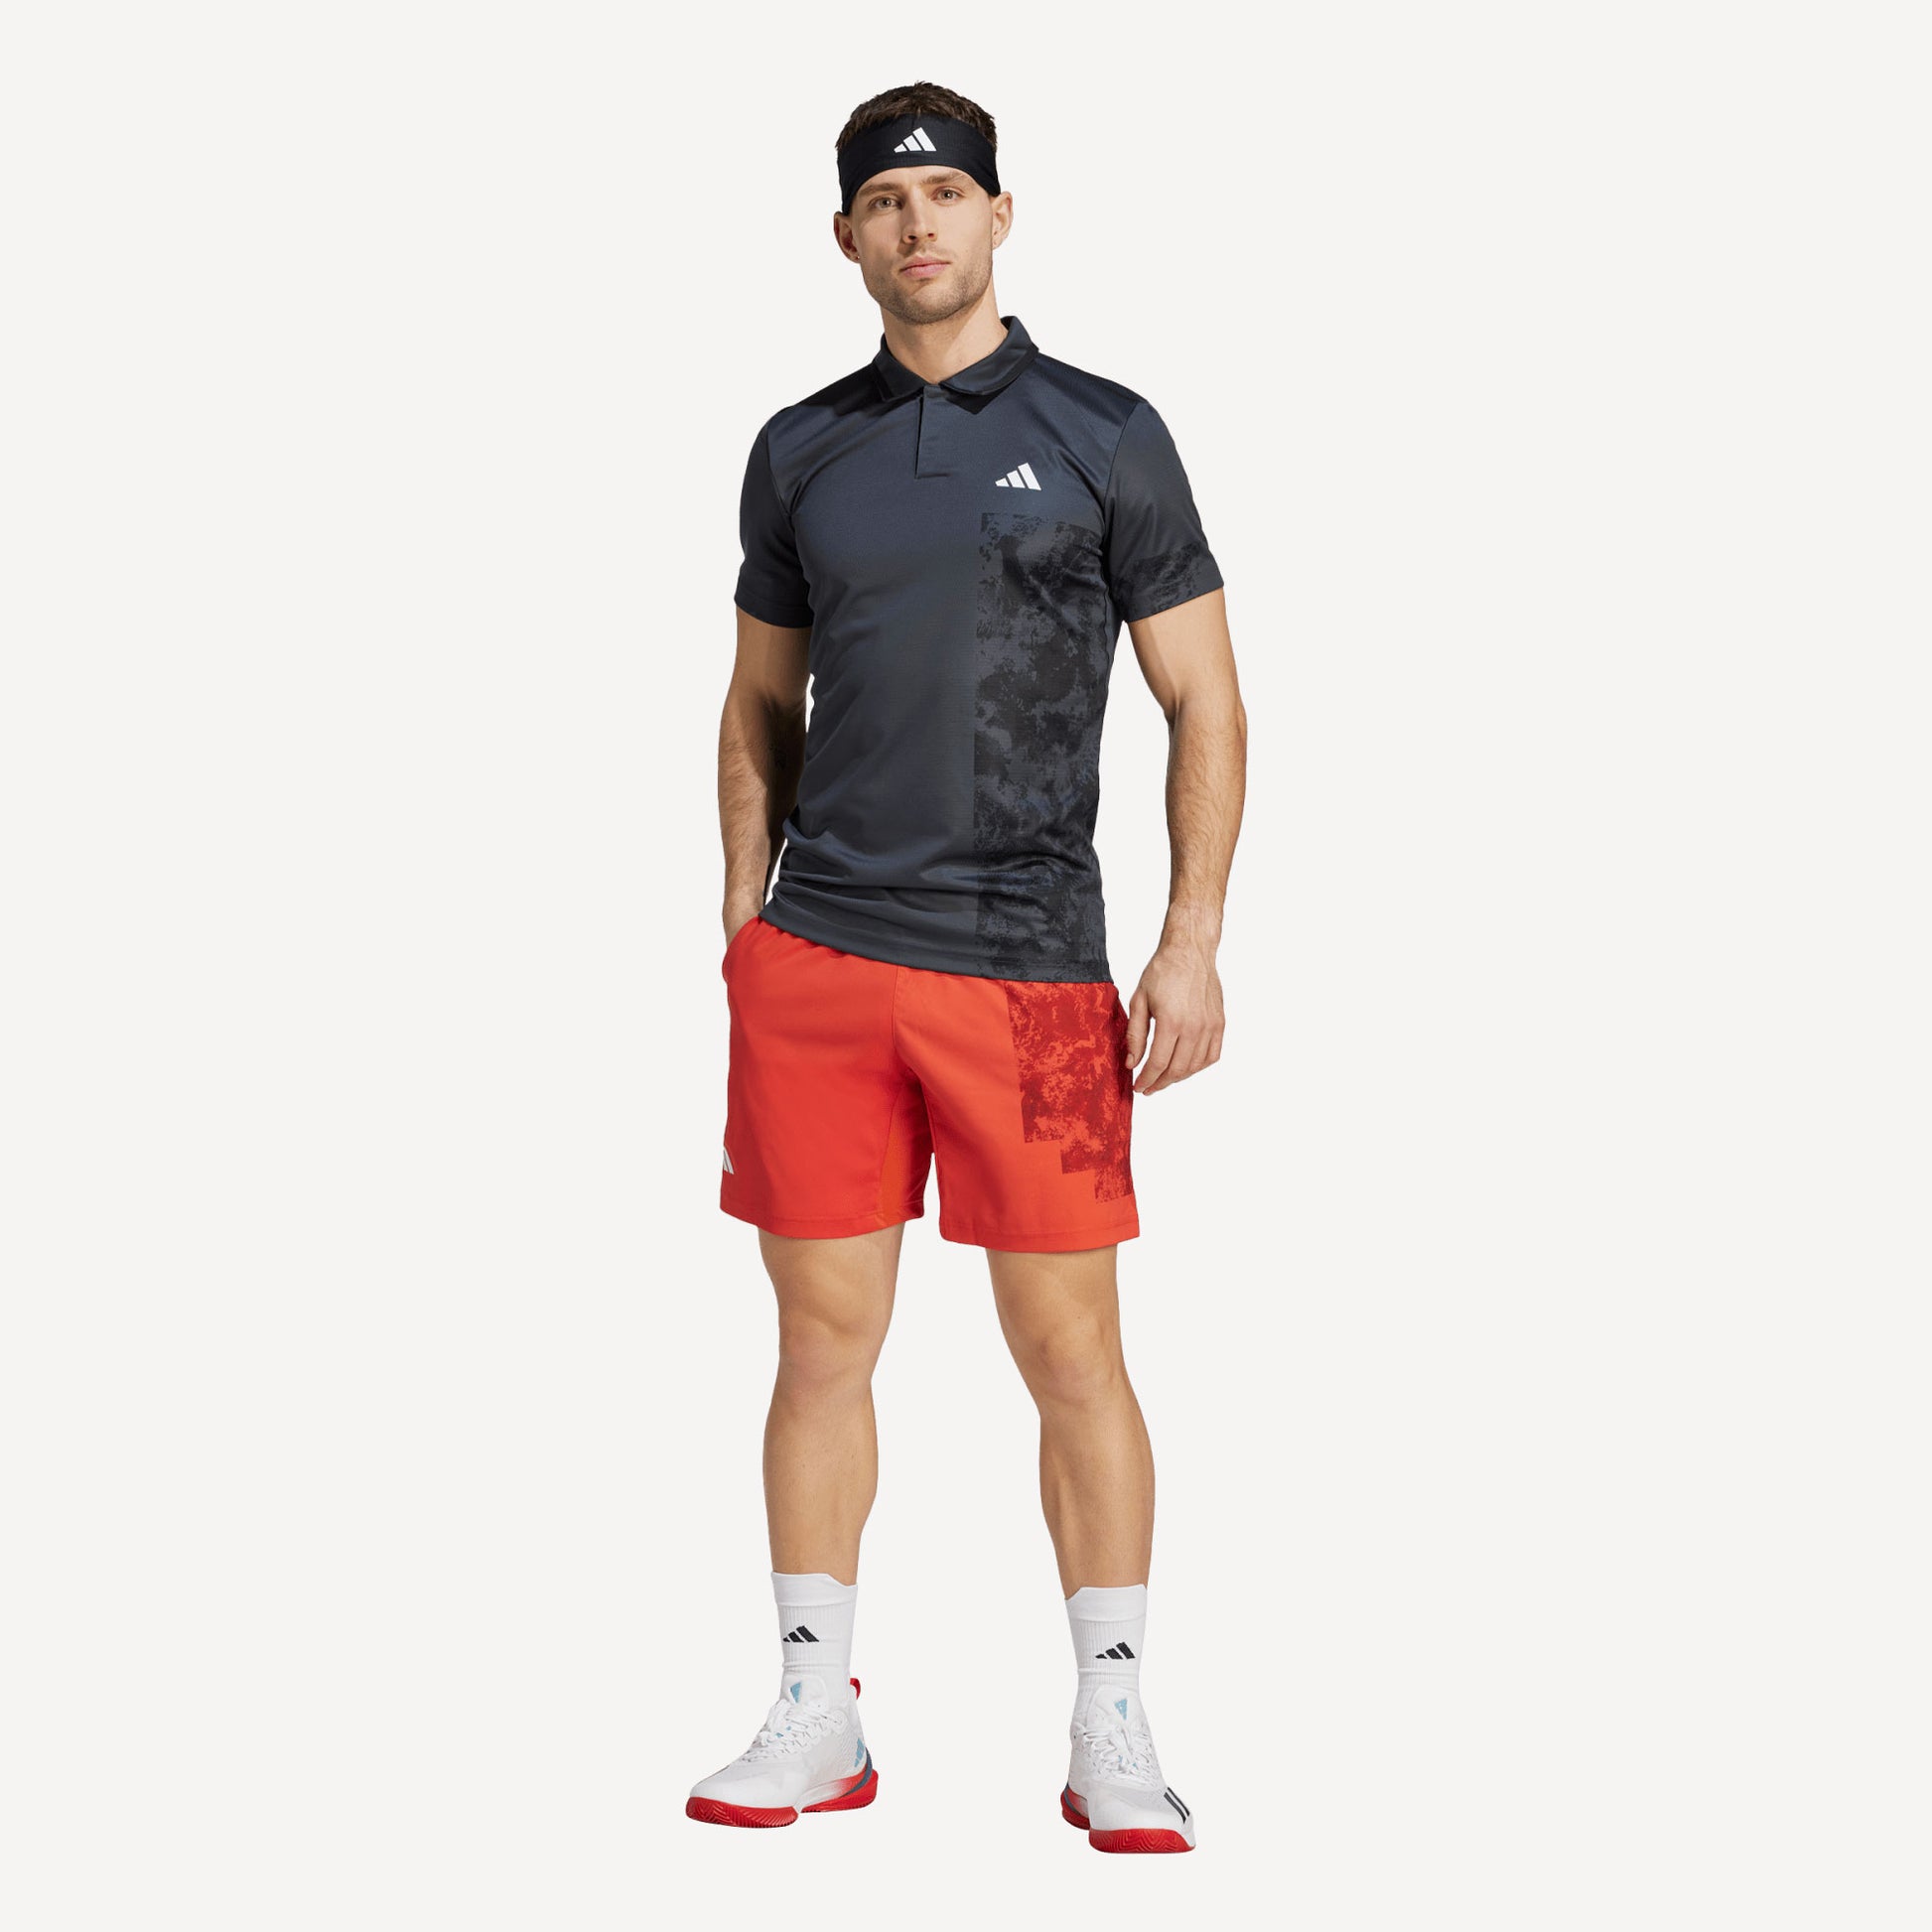 adidas Paris Freelift Men's Tennis Polo Grey (4)